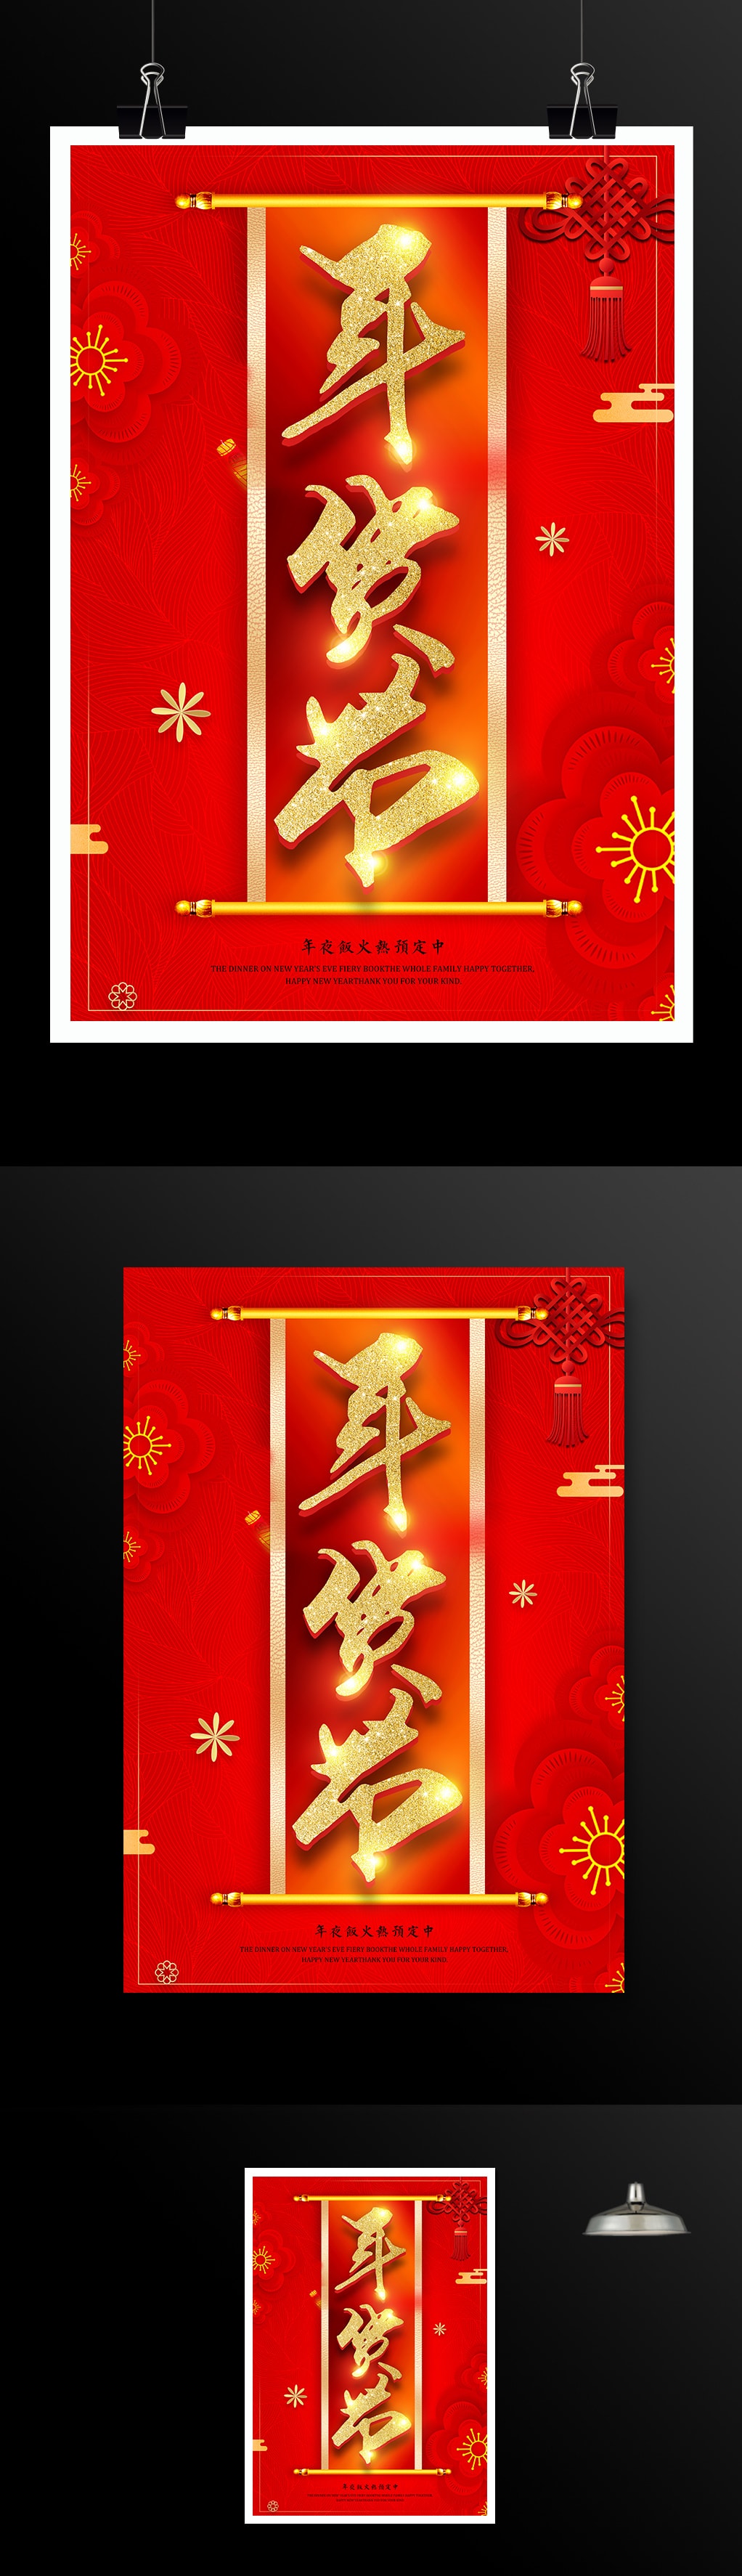 红色喜庆年货节促销海报